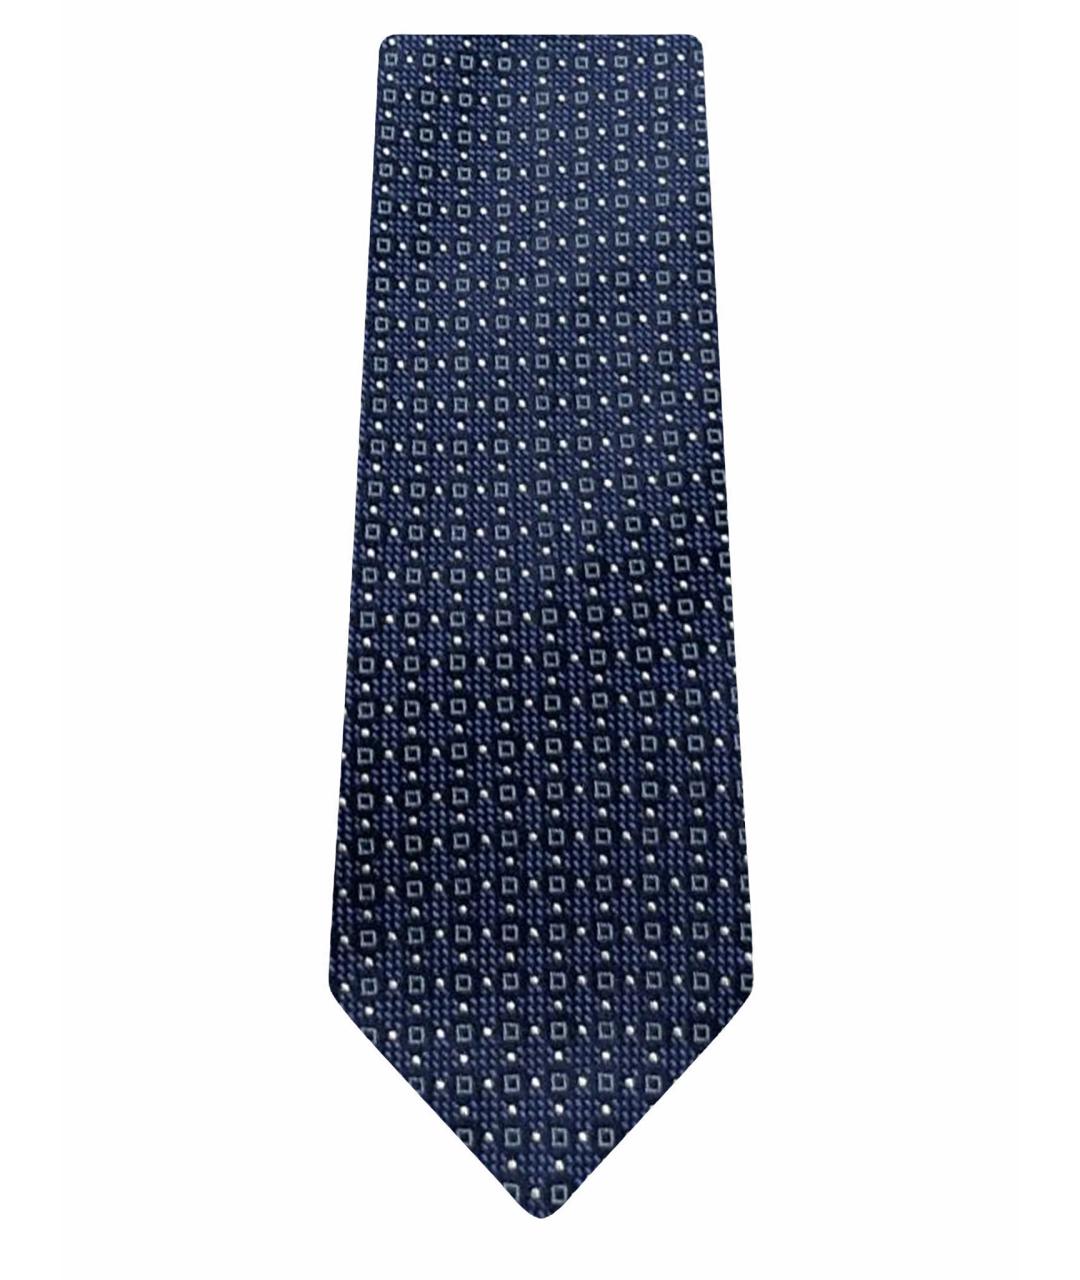 CANALI Темно-синий шелковый галстук, фото 1